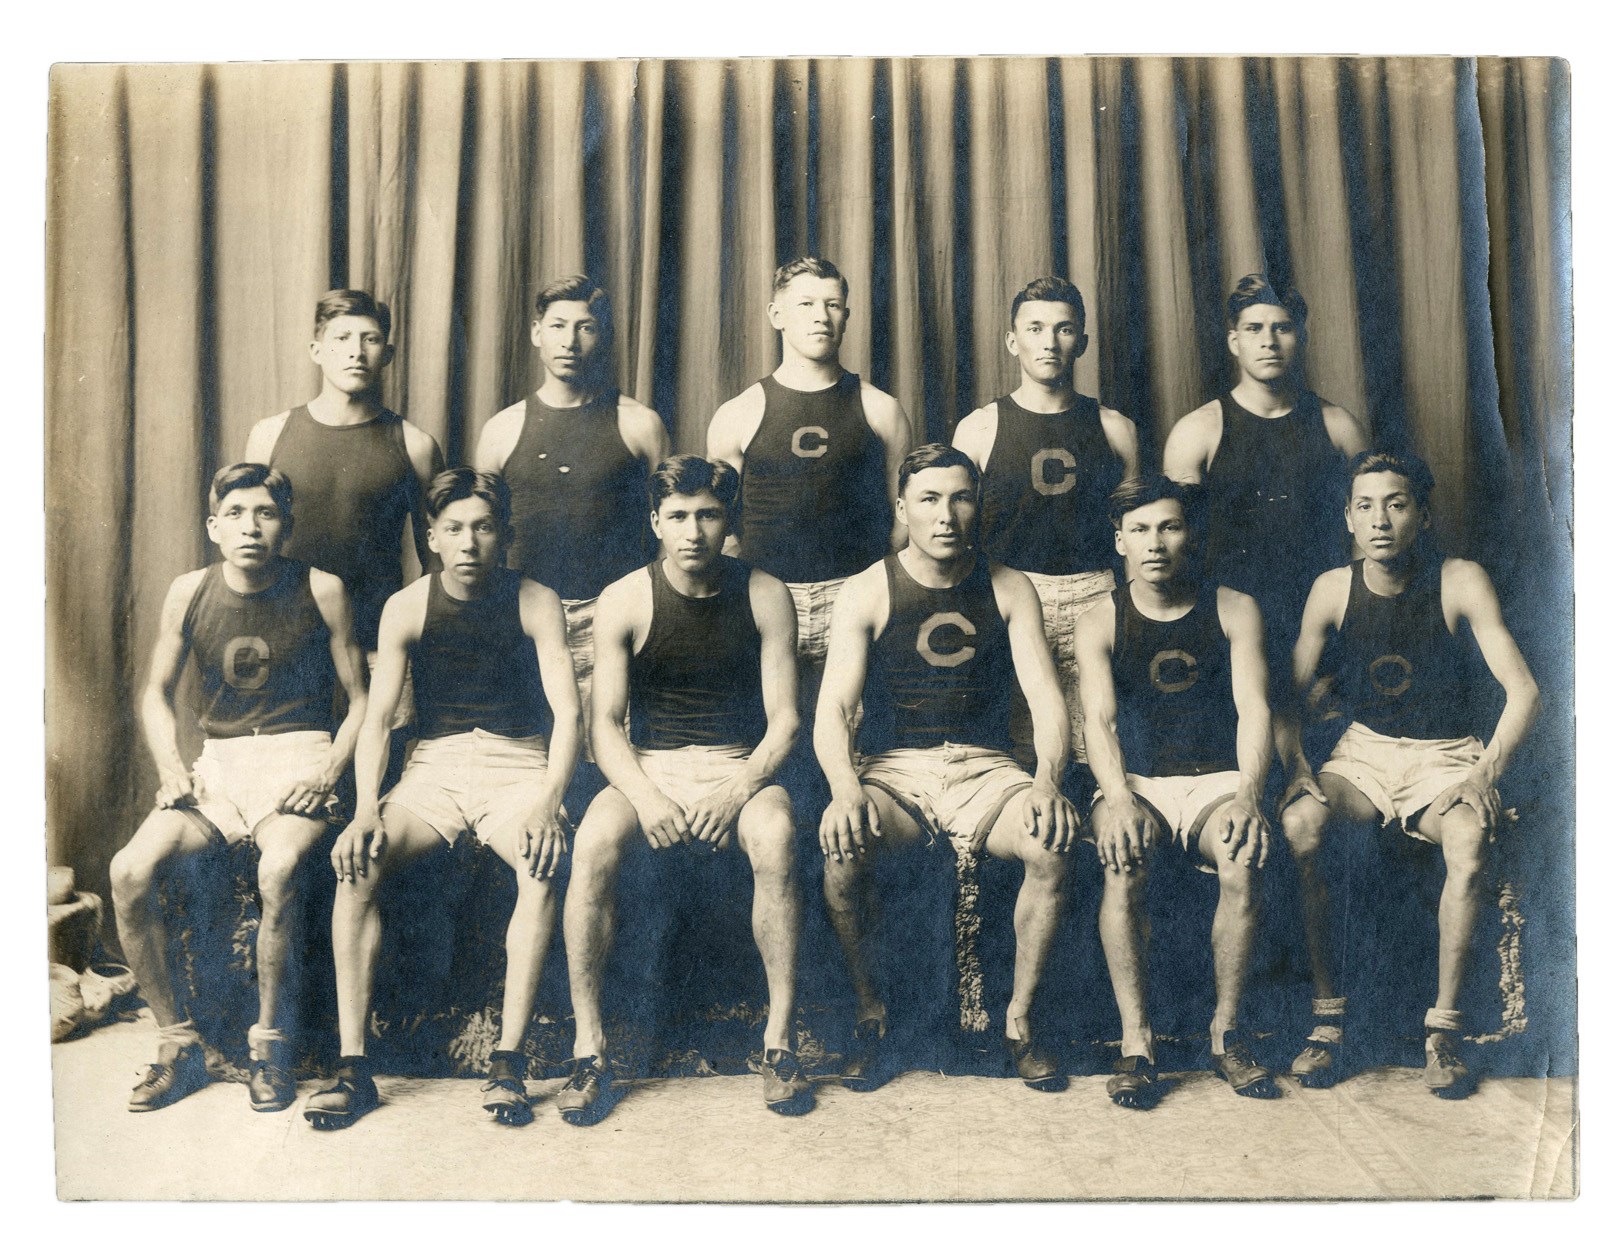 Football - 1911 Carlisle Indian School Track Team w/ Jim Thorpe & Lewis Tewanima